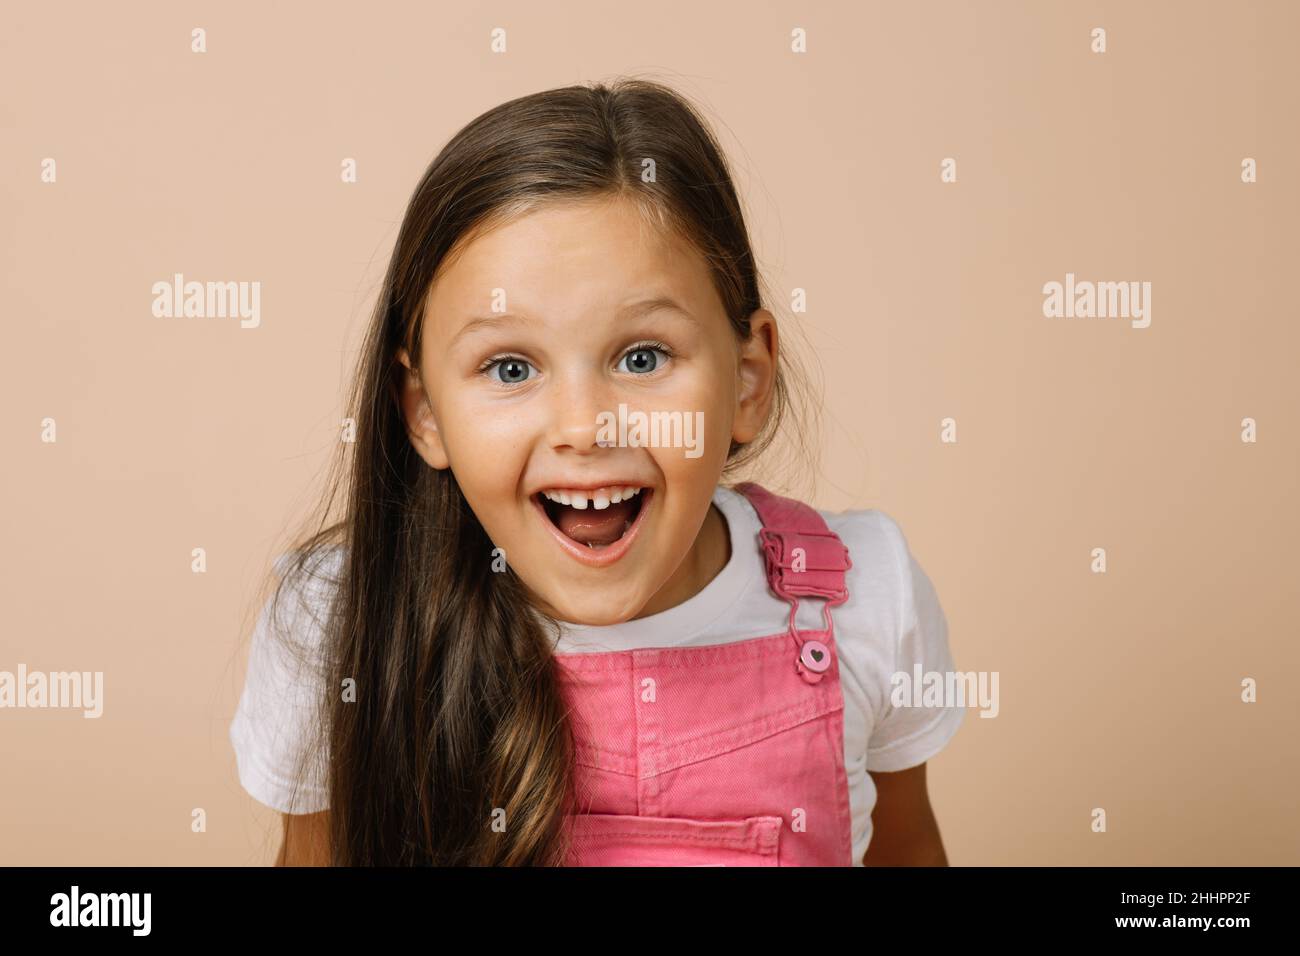 Petite fille avec des yeux surpris, bouche ouverte, sourire éclatant avec des dents et des sourcils relevés regardant l'appareil photo portant une combinaison rose vif et blanc Banque D'Images